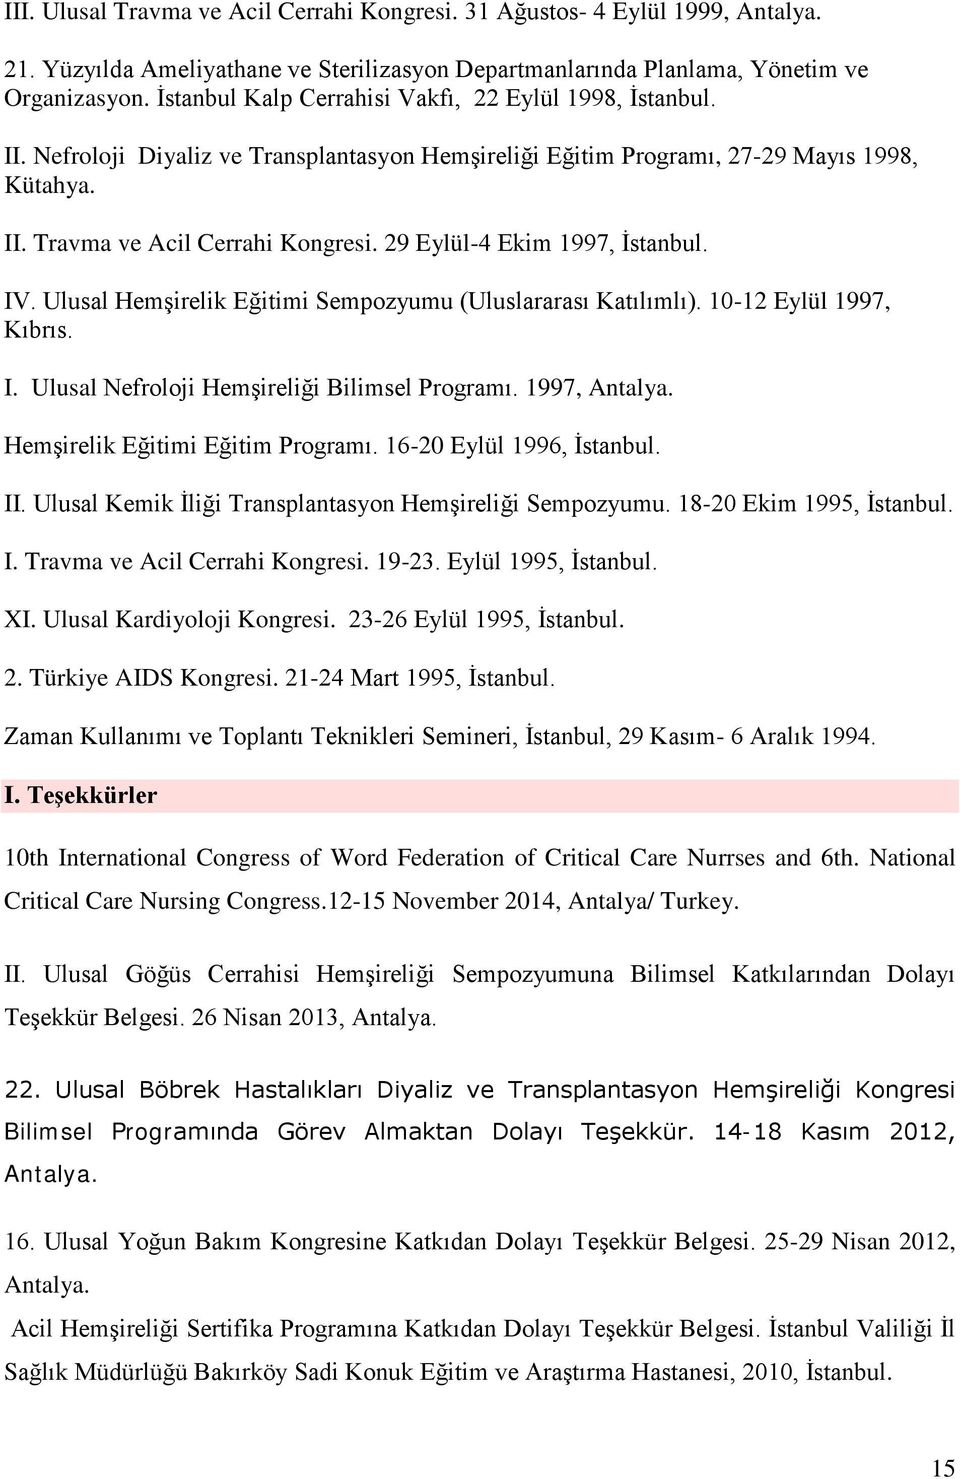 29 Eylül-4 Ekim 1997, İstanbul. IV. Ulusal Hemşirelik Eğitimi Sempozyumu (Uluslararası Katılımlı). 10-12 Eylül 1997, Kıbrıs. I. Ulusal Nefroloji Hemşireliği Bilimsel Programı. 1997, Antalya.